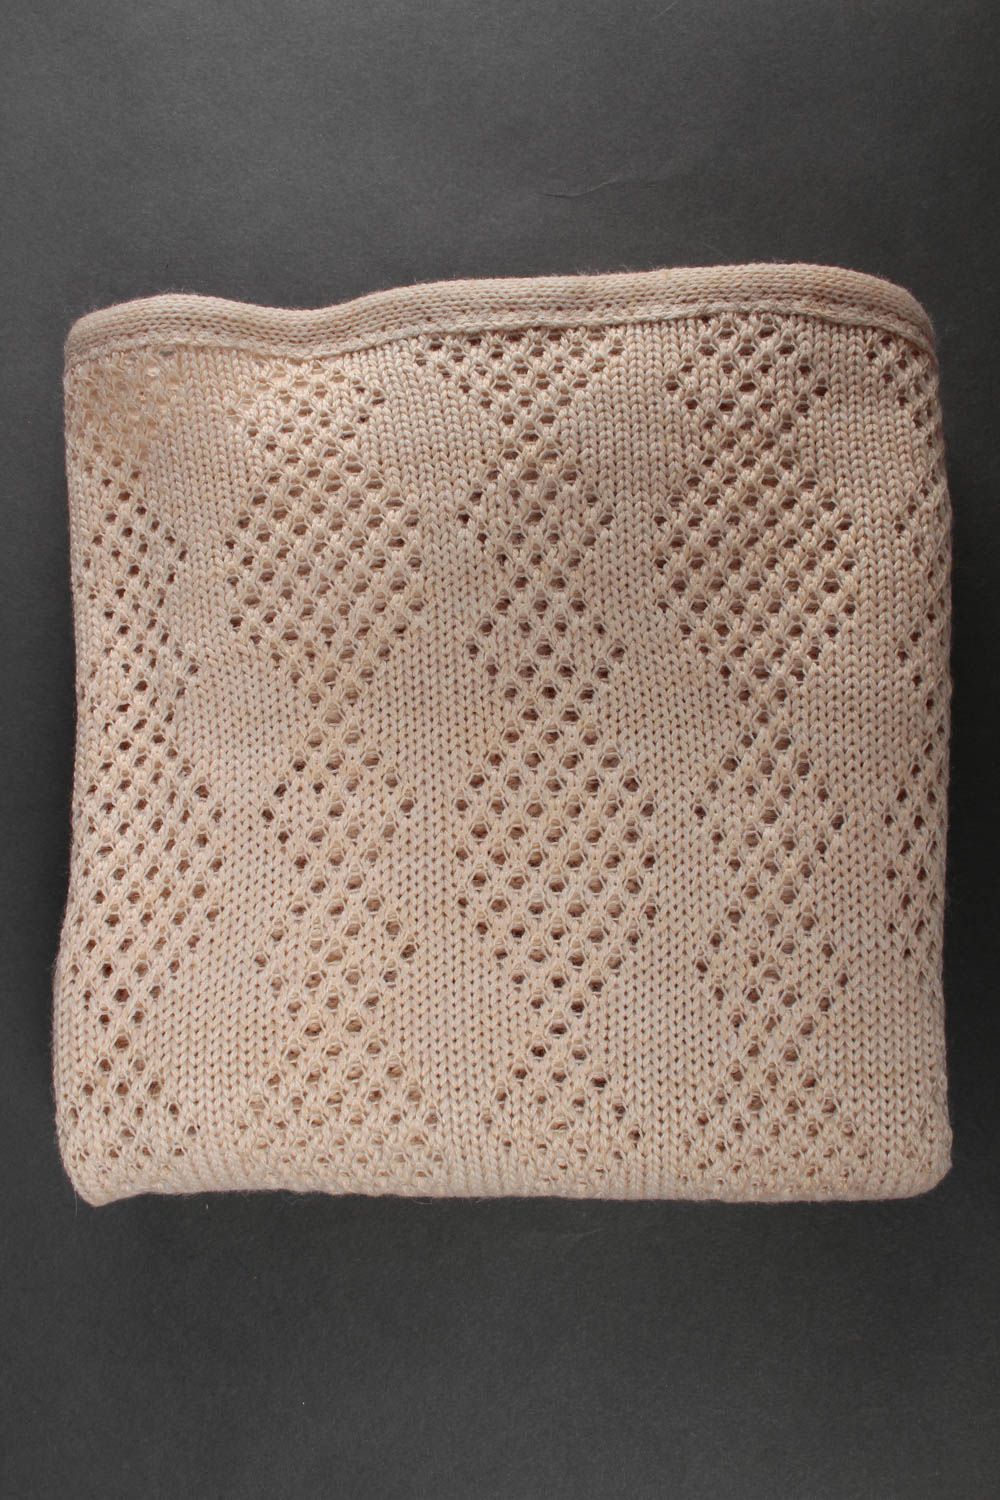 Одеяло ручной работы детское одеяло из пряжи вязаное одеяло бежевое краивое фото 4